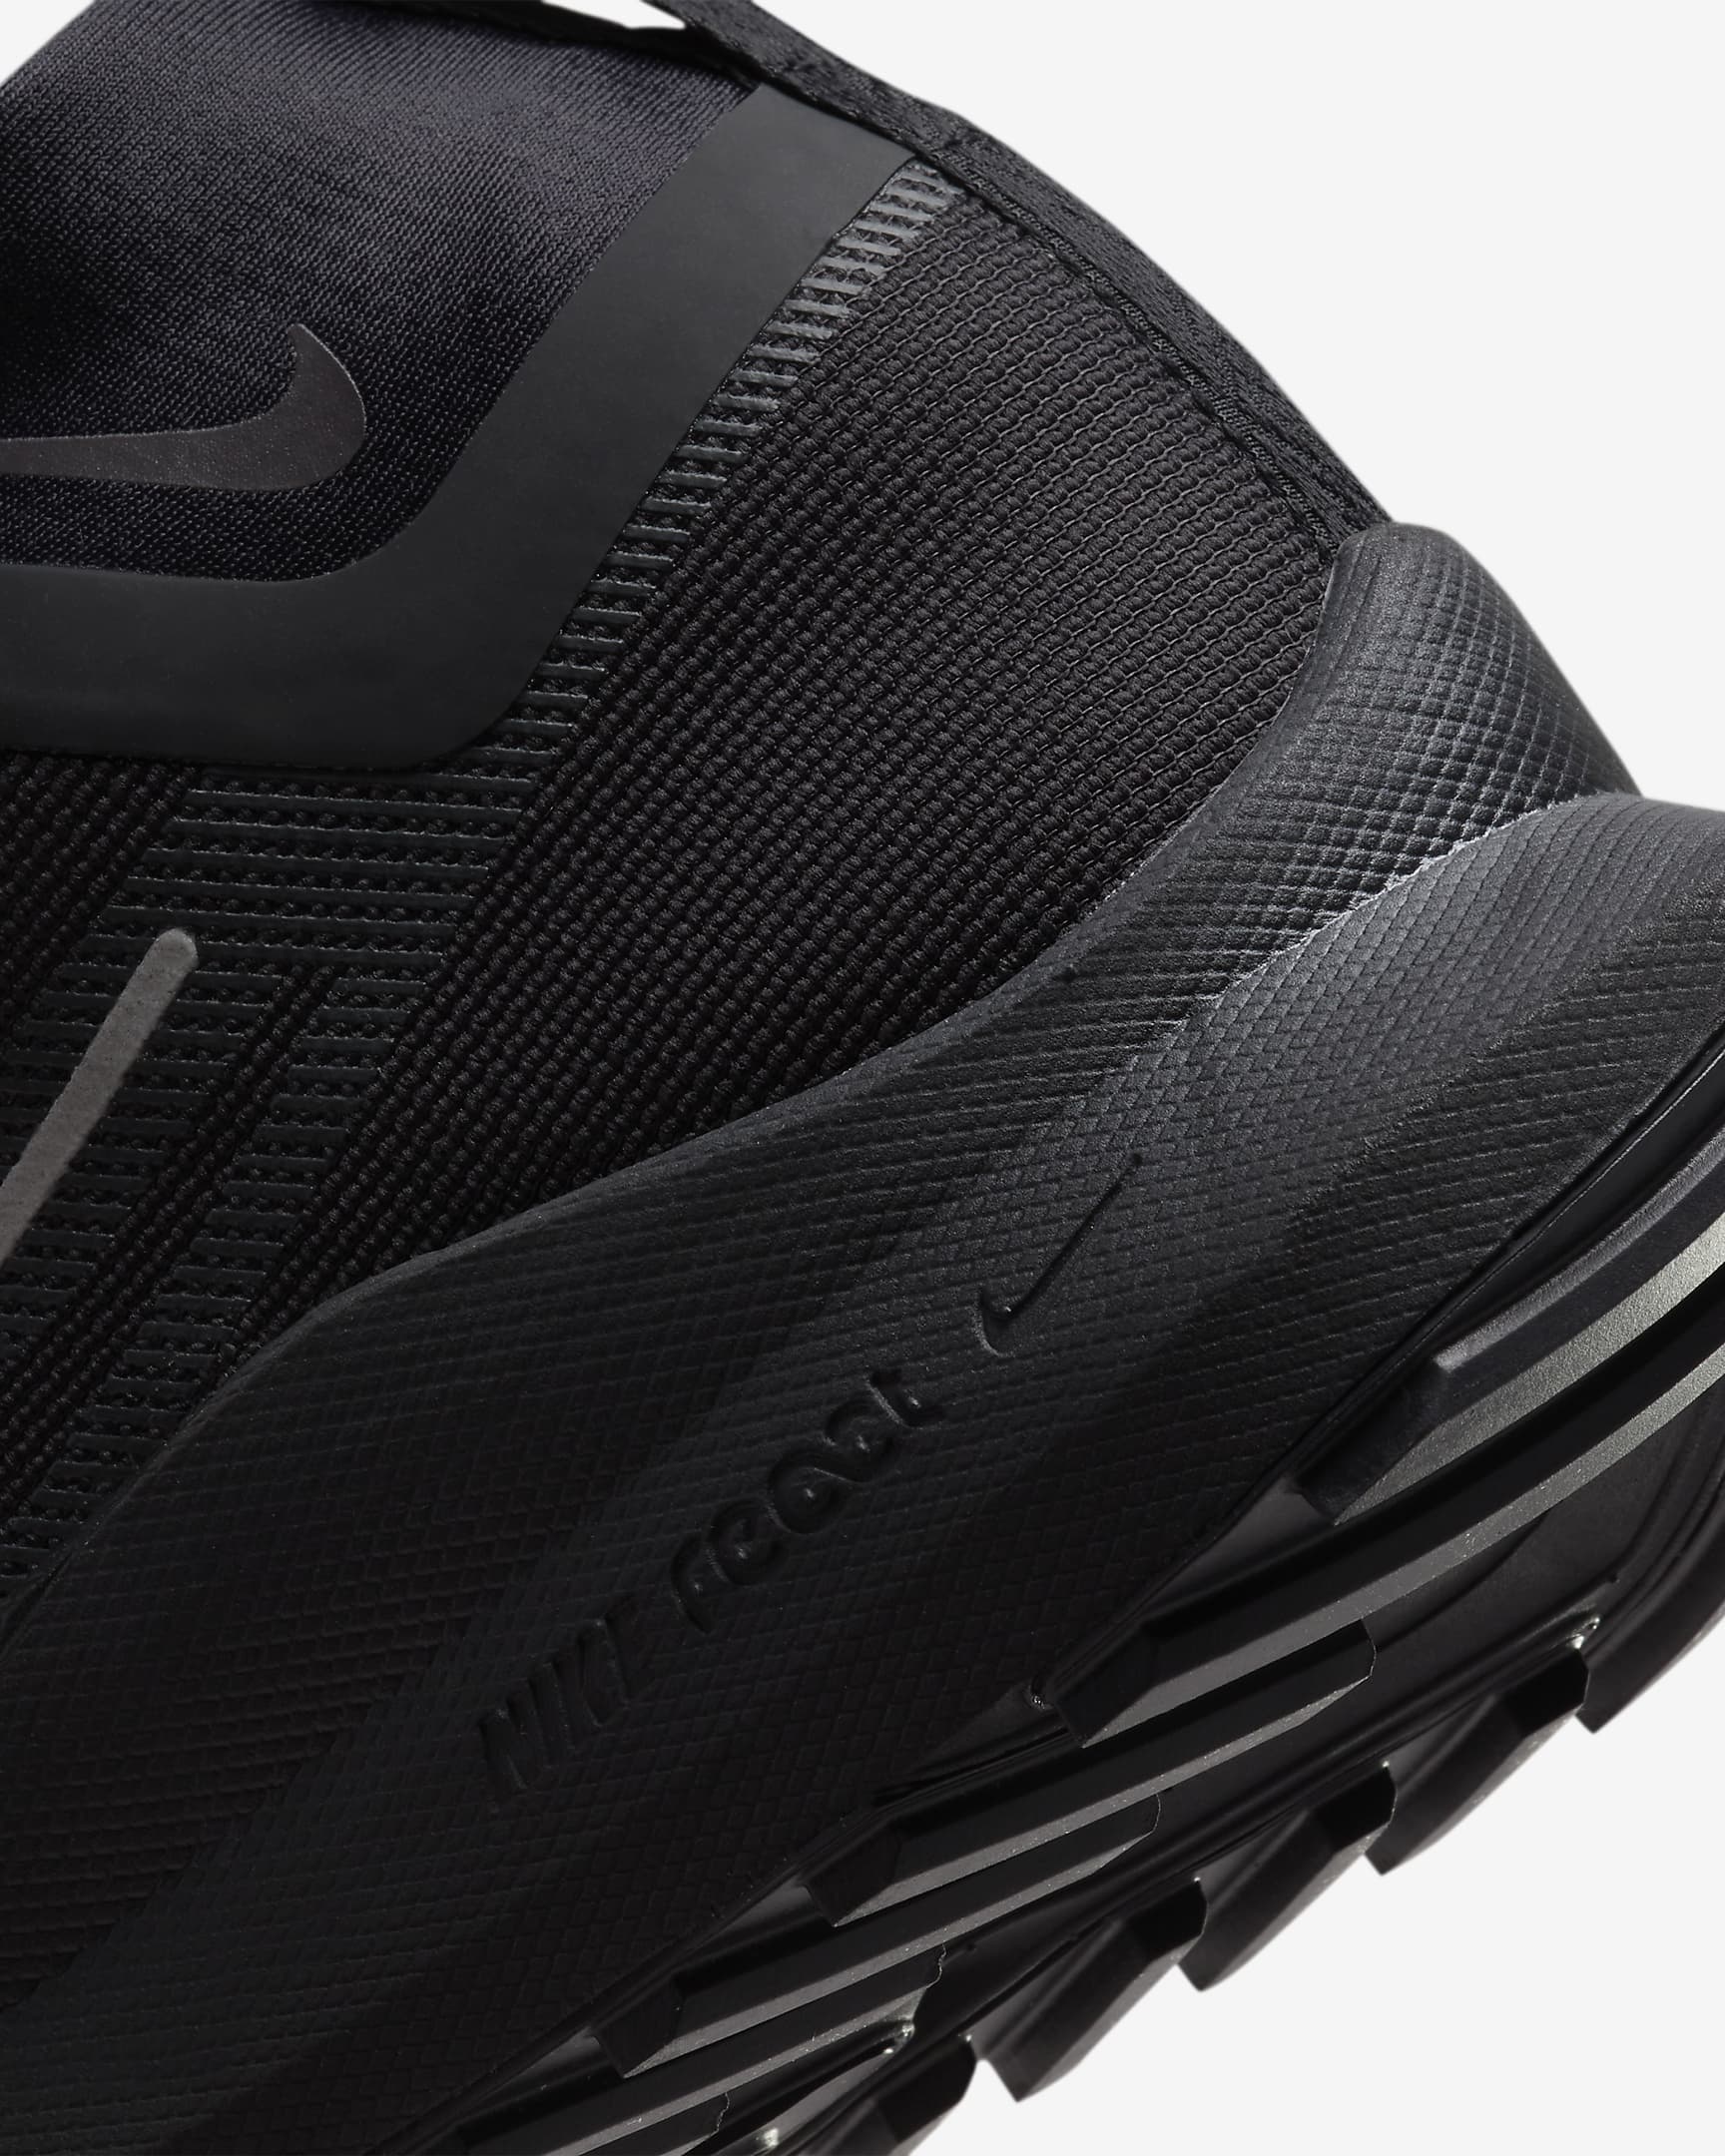 Chaussure de trail imperméable Nike Pegasus Trail 4 GORE-TEX pour homme - Noir/Velvet Brown/Anthracite